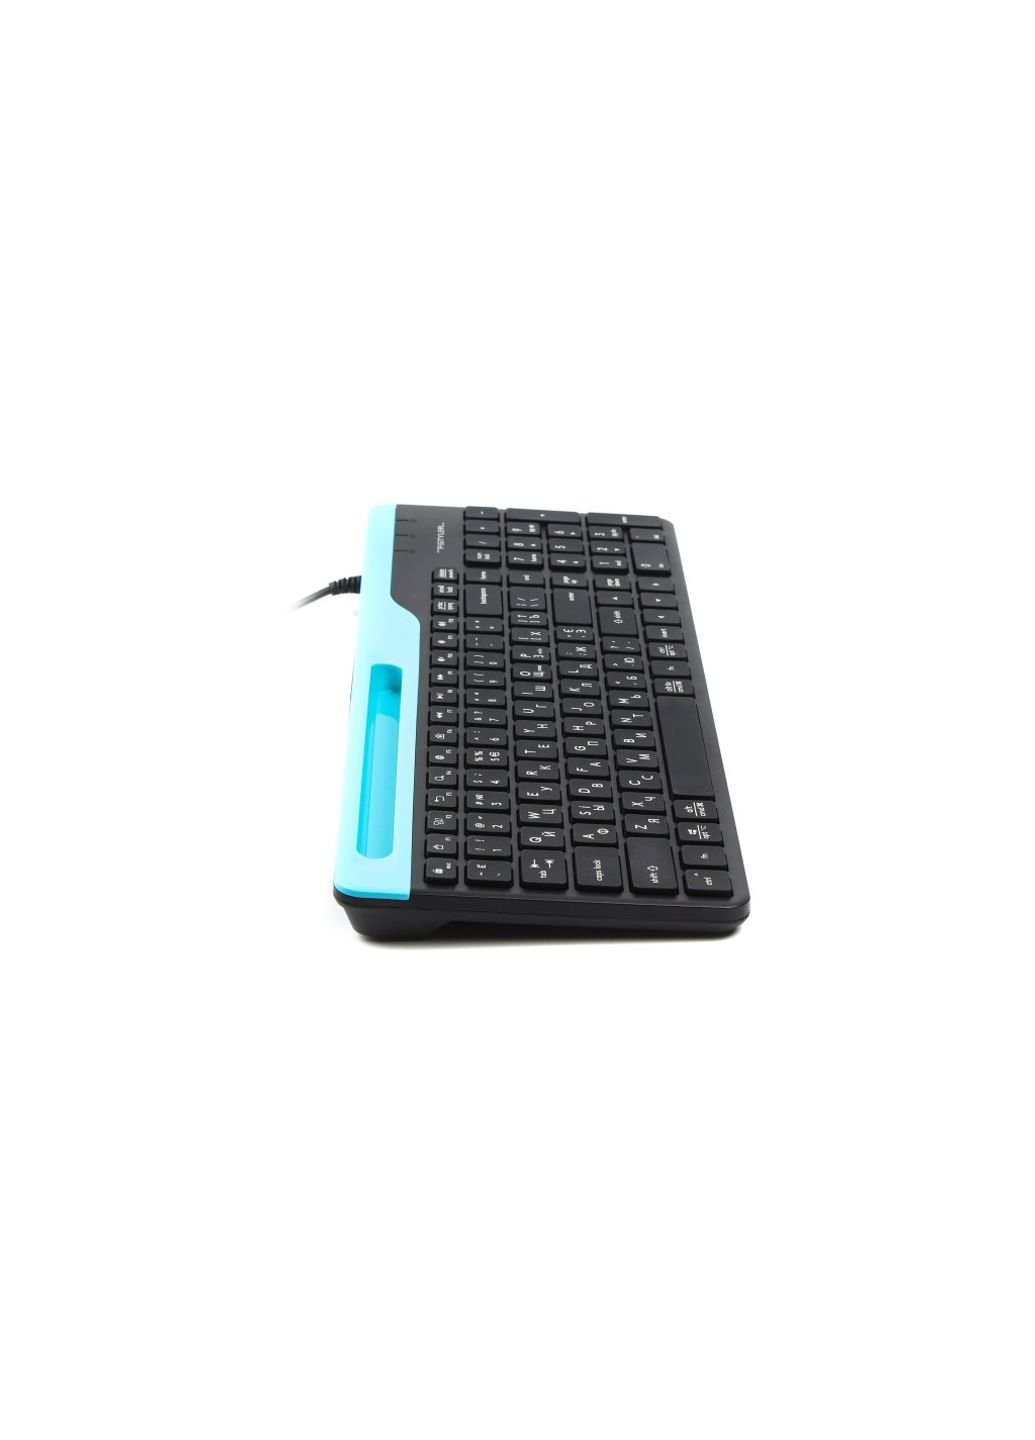 Клавіатура A4Tech fk25 usb black (253547587)